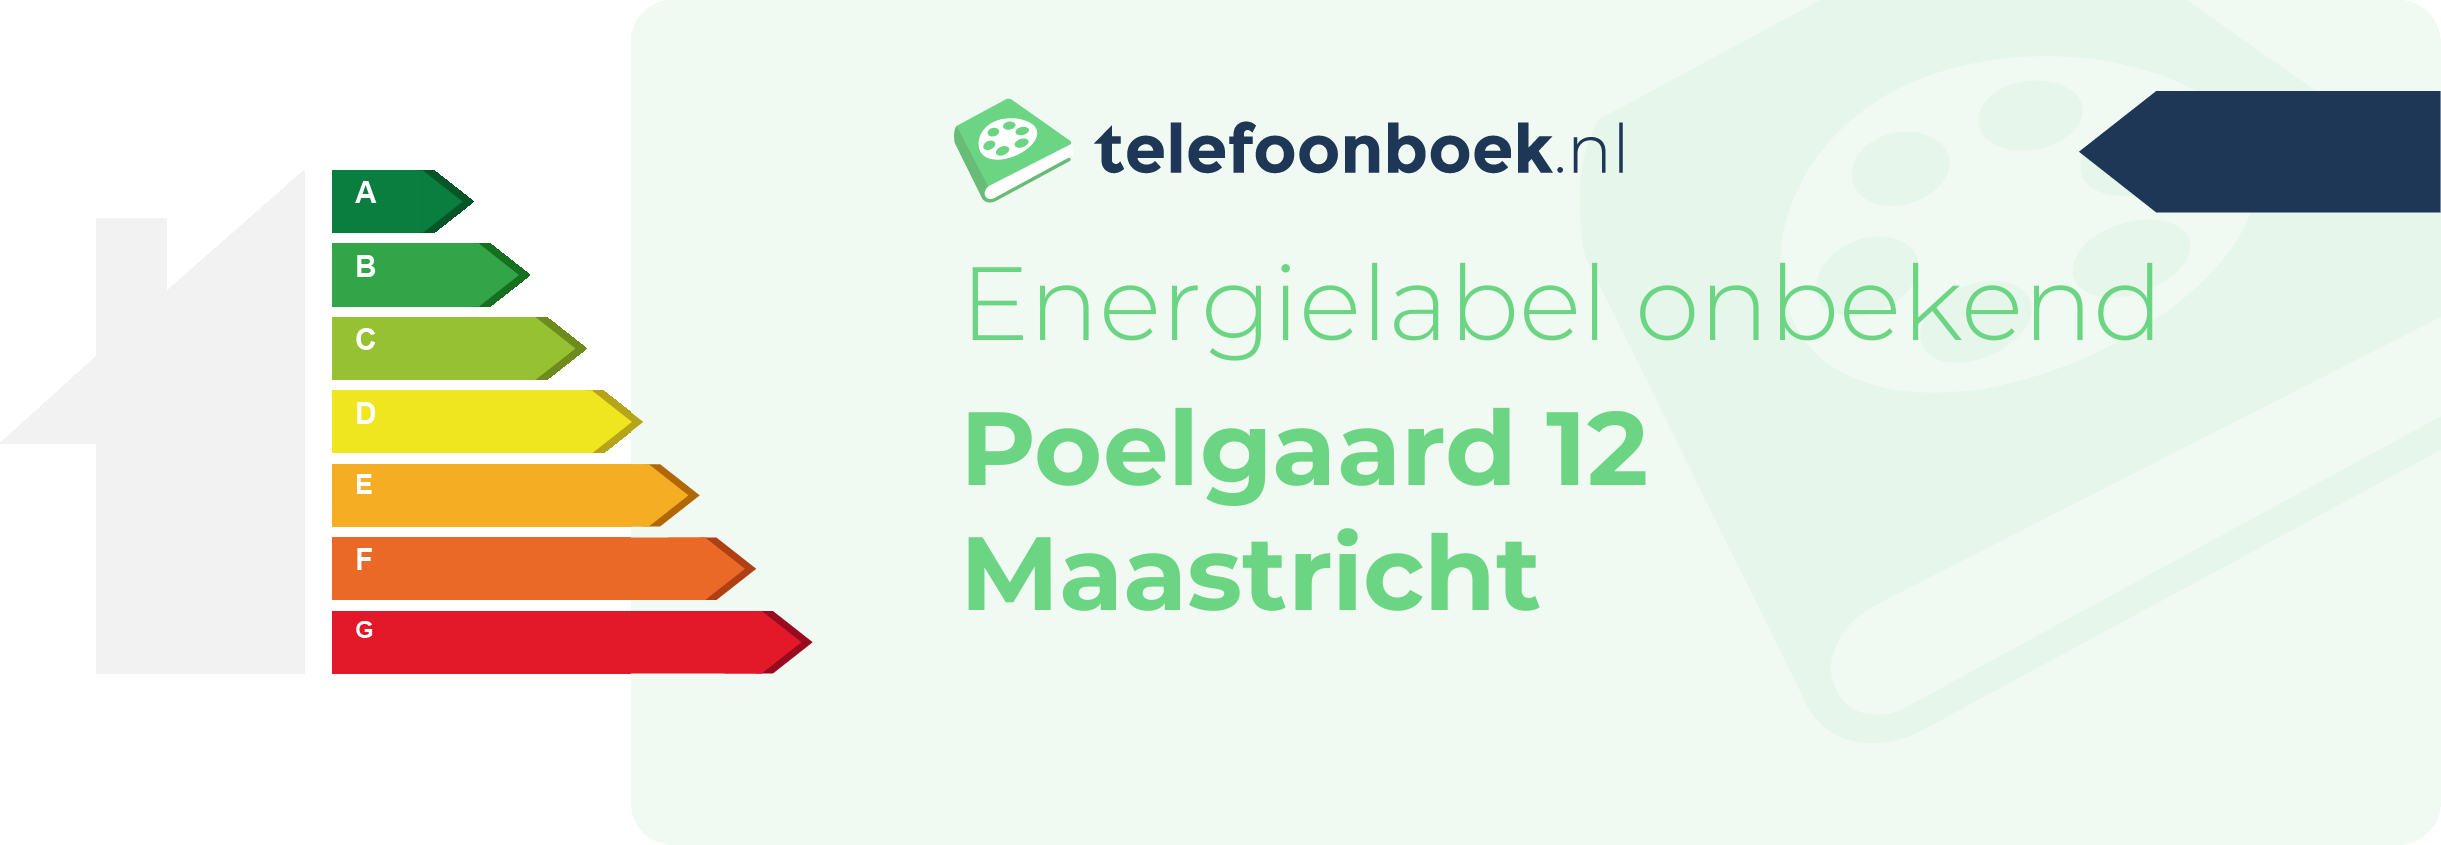 Energielabel Poelgaard 12 Maastricht